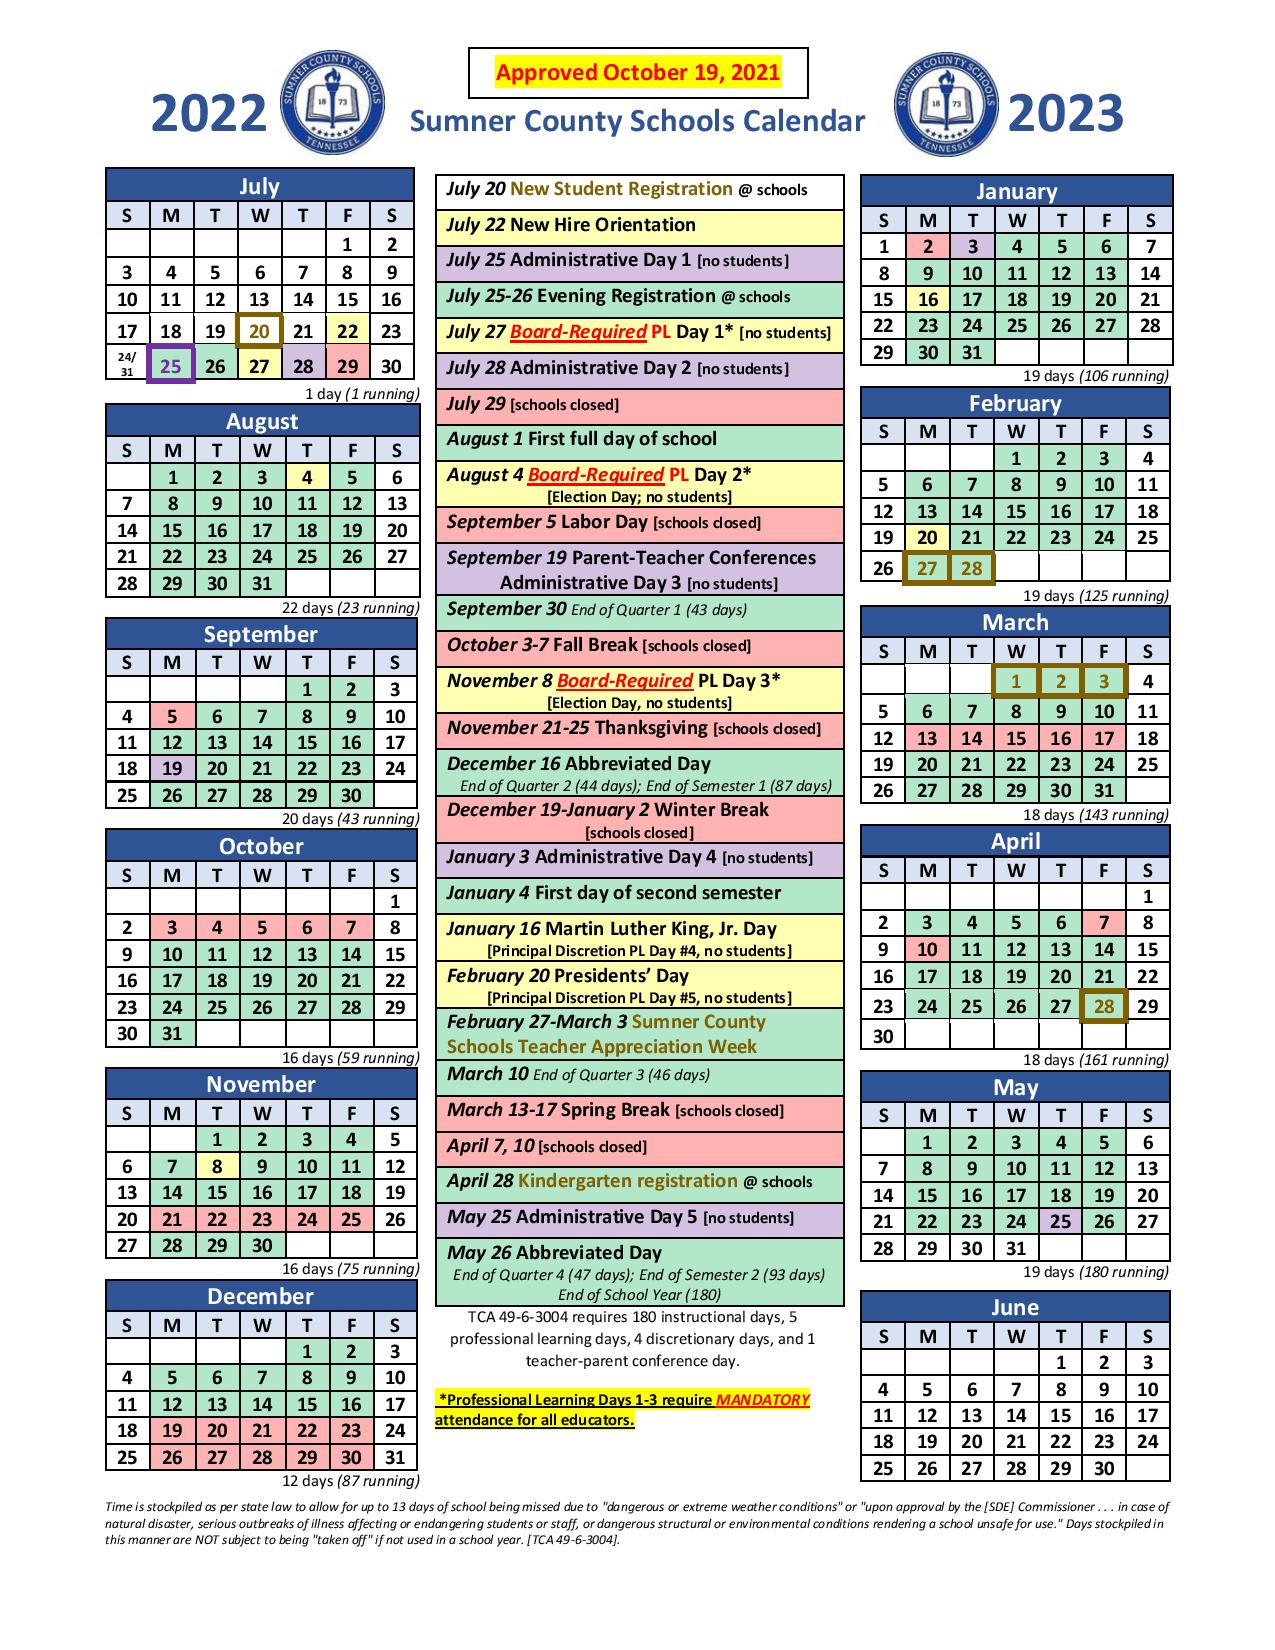 sumner-county-2023-calendar-martin-printable-calendars-bank2home